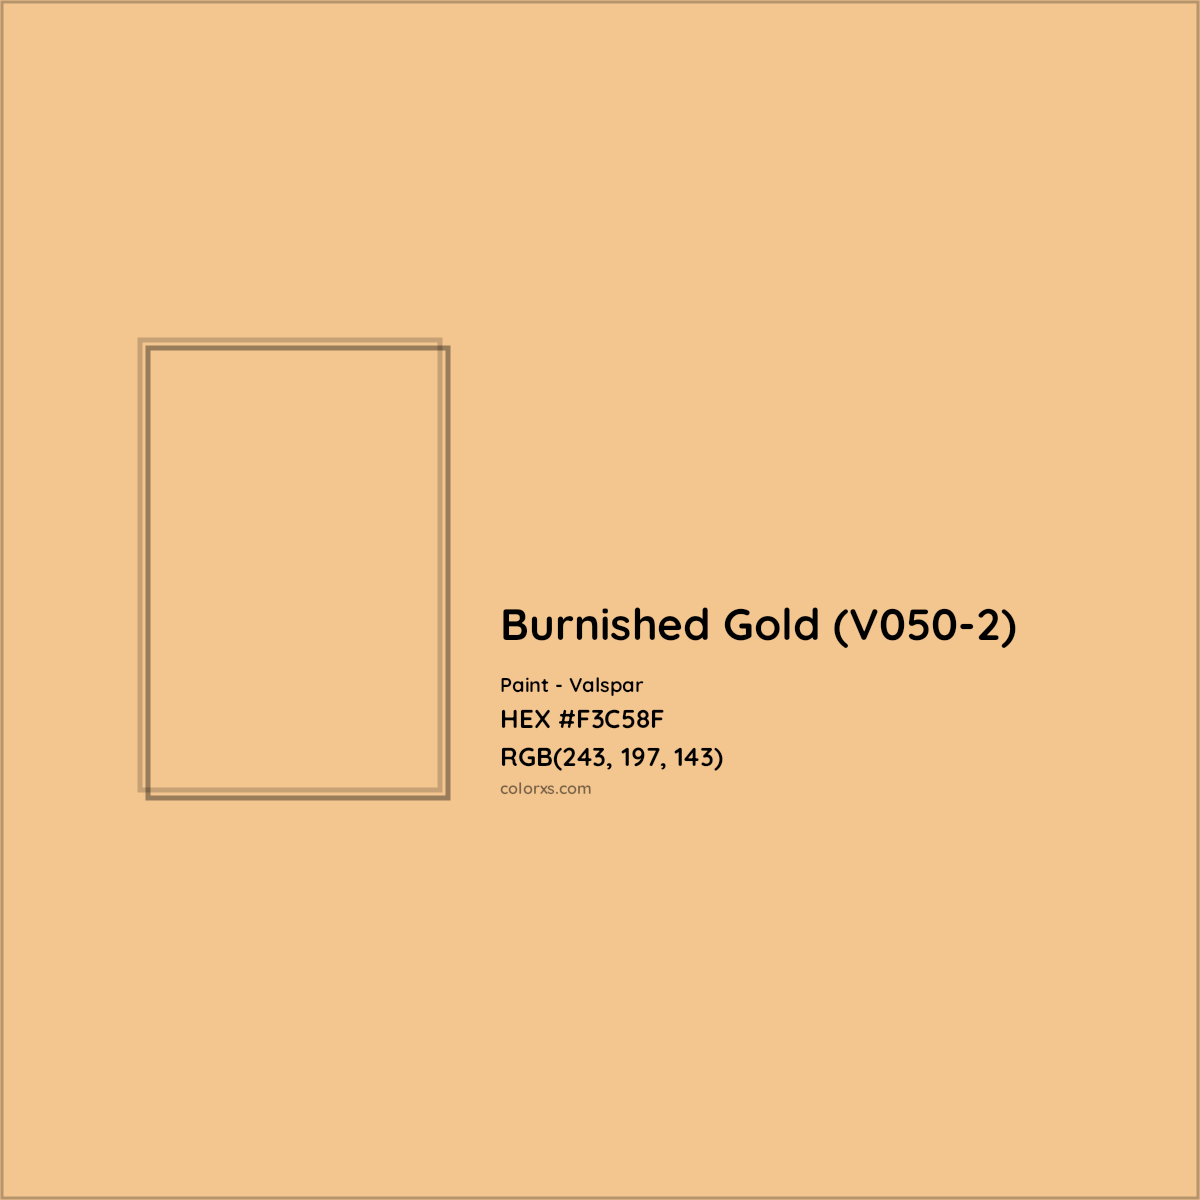 HEX #F3C58F Burnished Gold (V050-2) Paint Valspar - Color Code